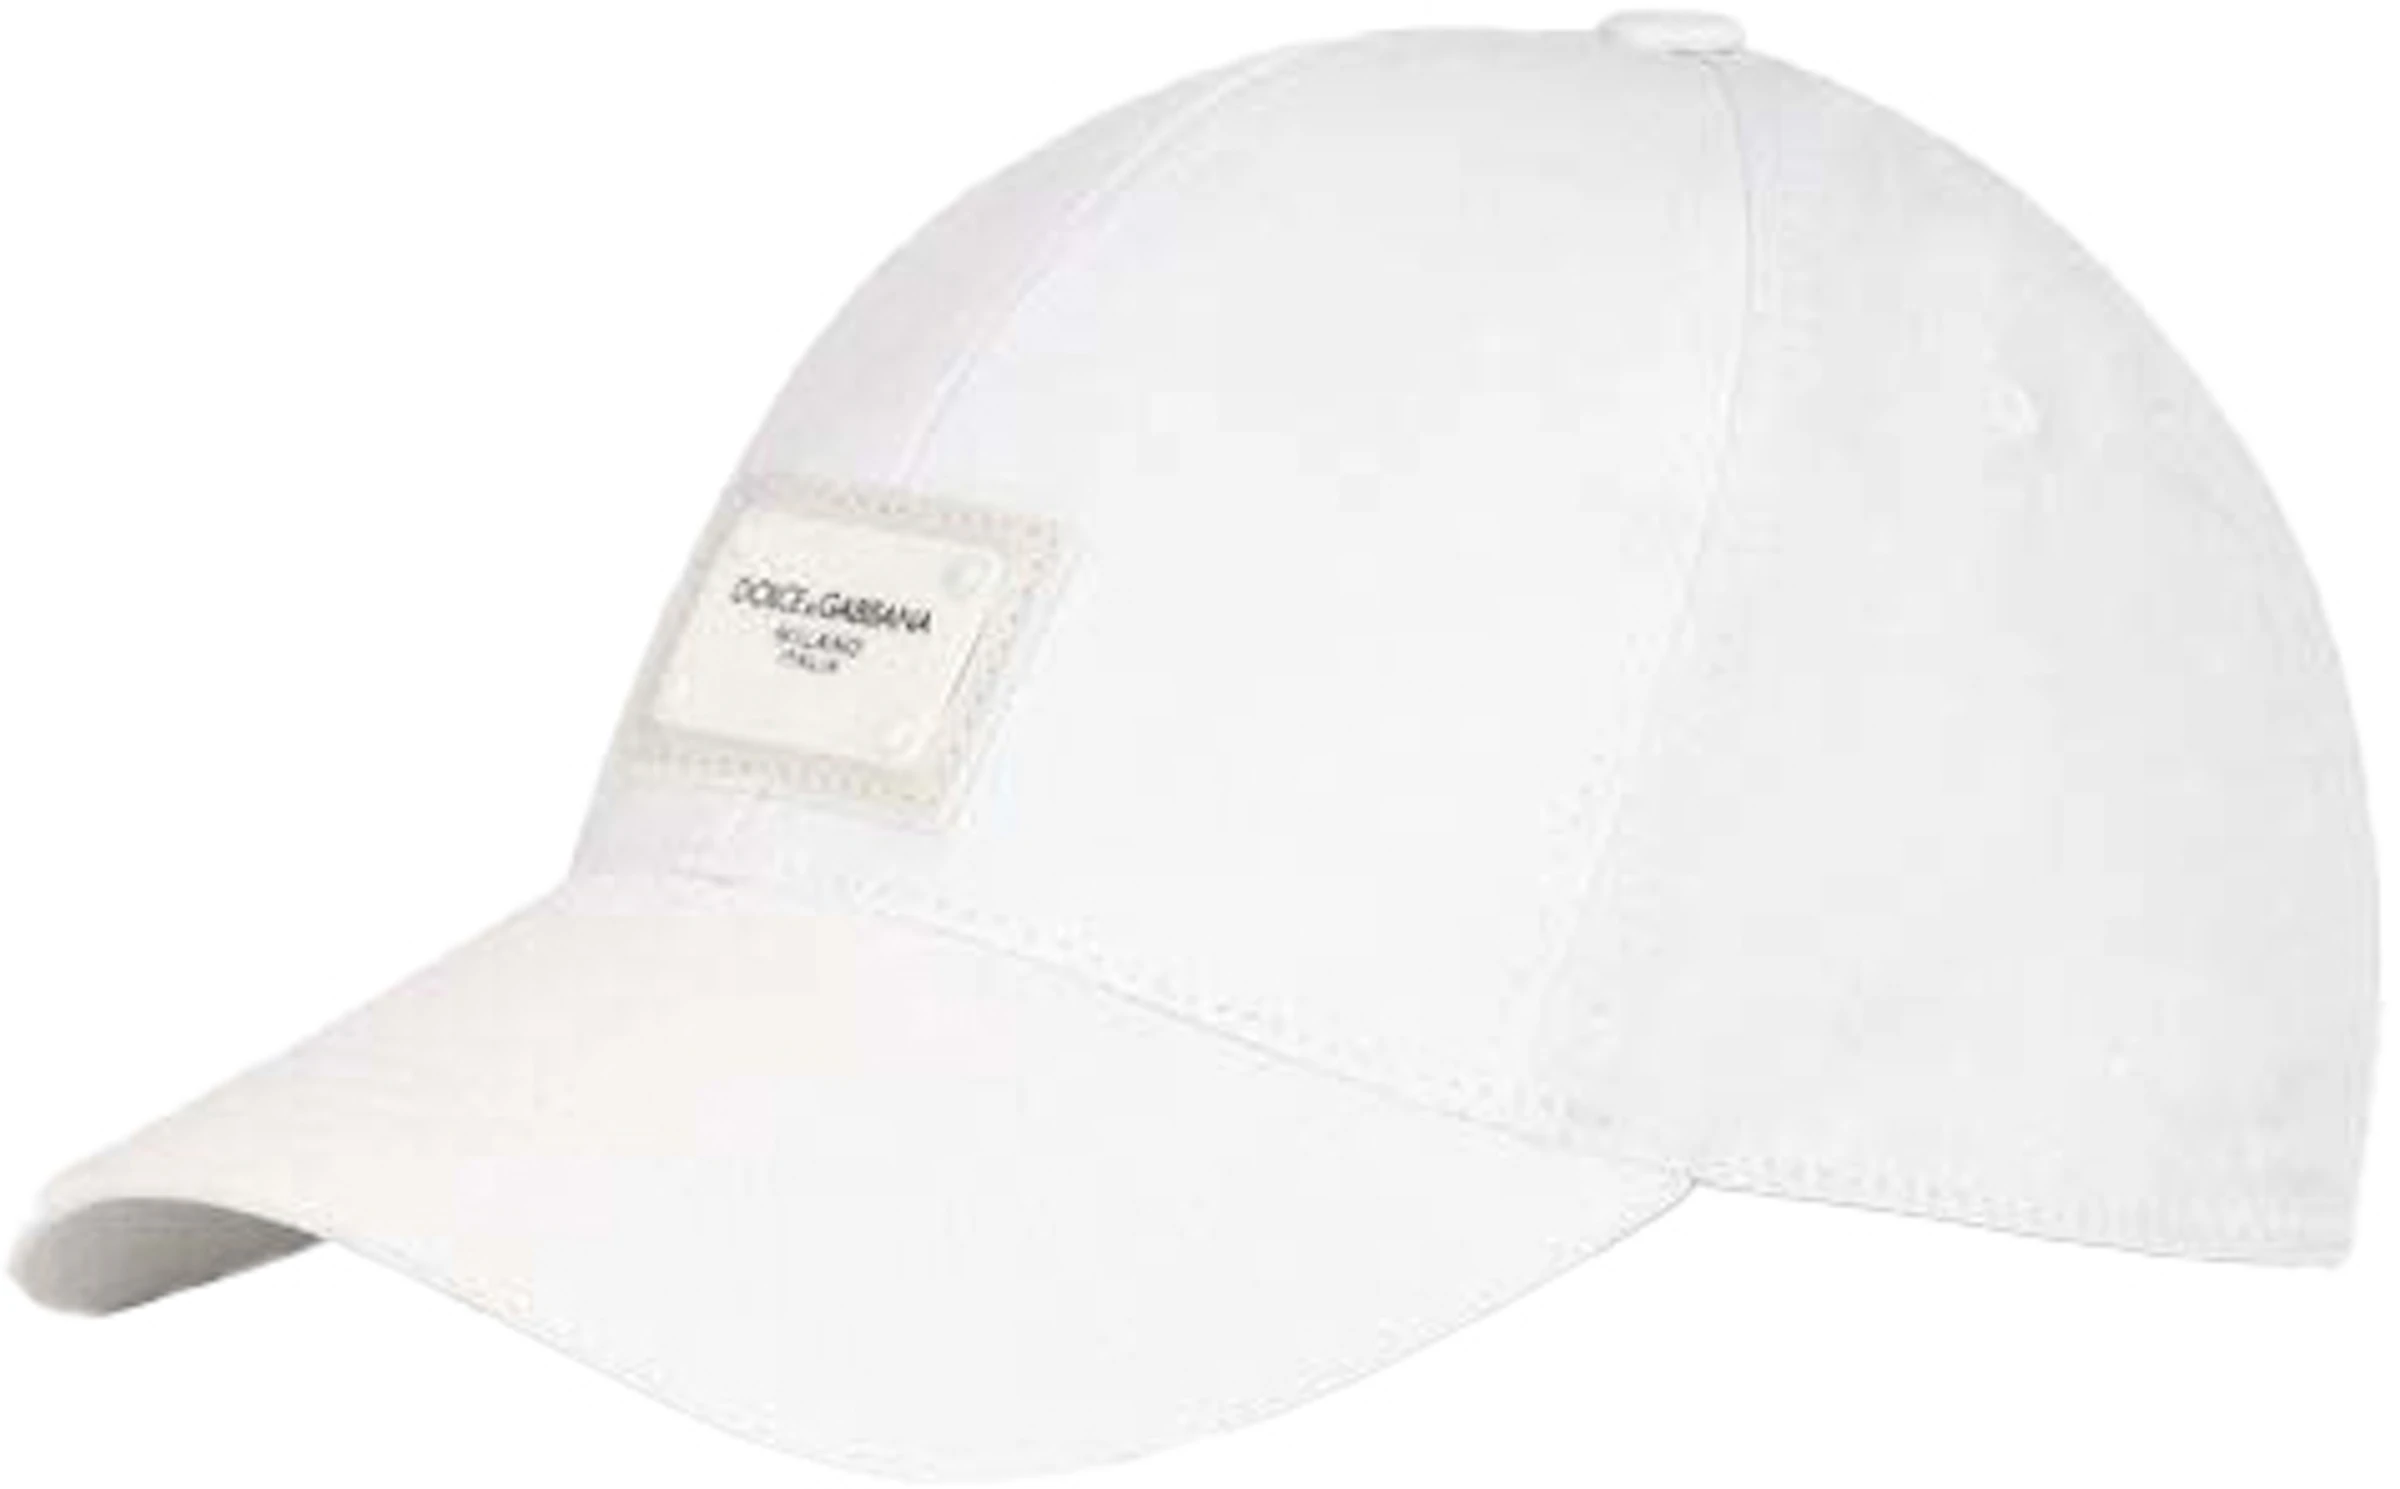 ademen verwerken Blind vertrouwen Dolce & Gabbana Branded Plate Baseball Cap White - SS22 - US